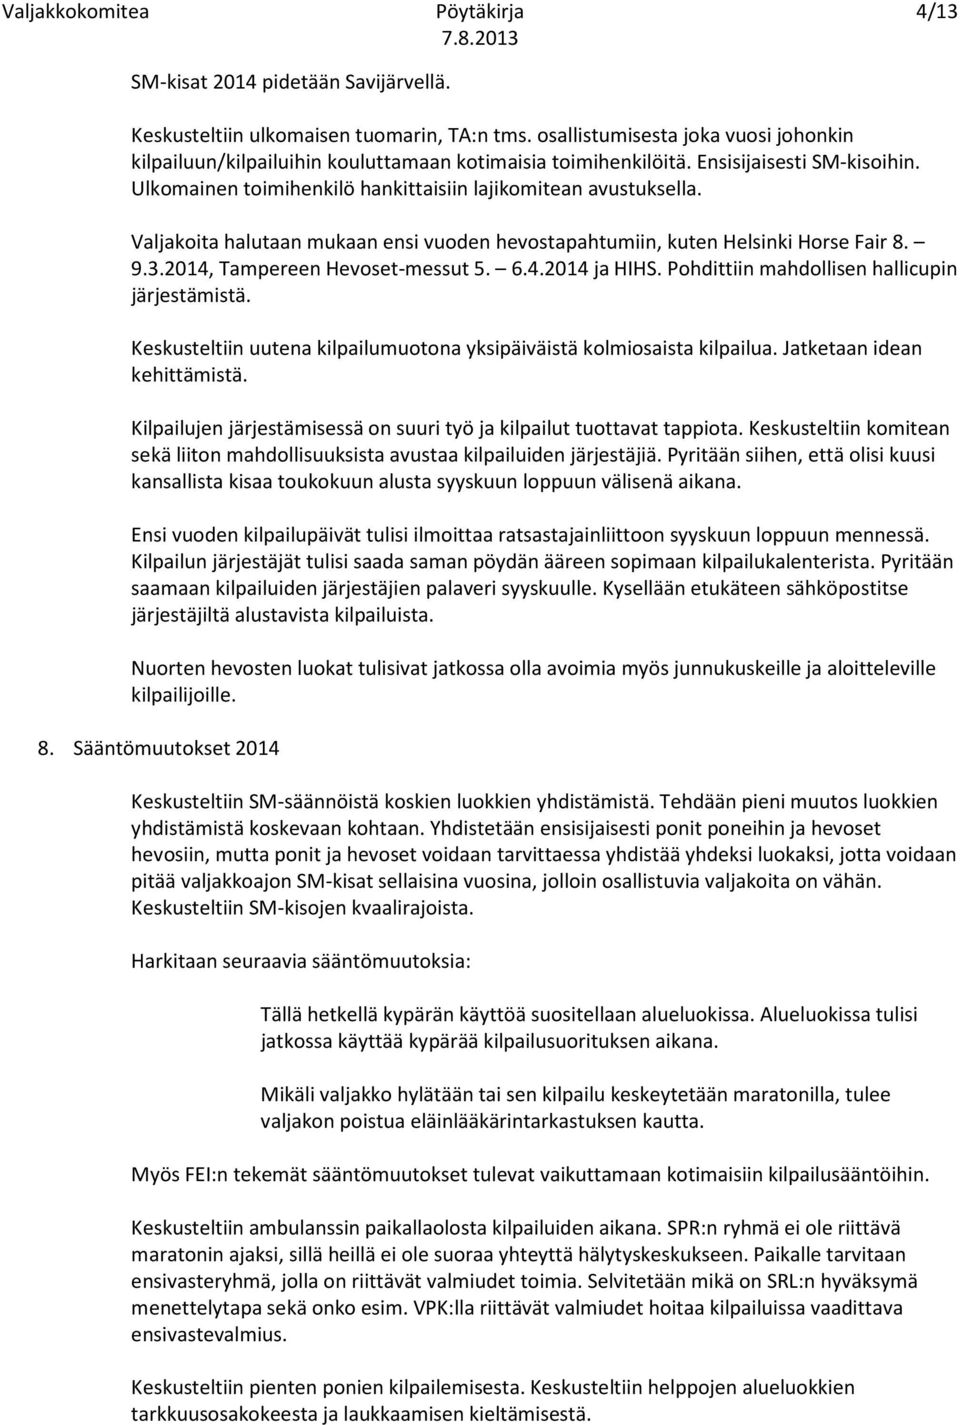 2014, Tampereen Hevoset-messut 5. 6.4.2014 ja HIHS. Pohdittiin mahdollisen hallicupin järjestämistä. Keskusteltiin uutena kilpailumuotona yksipäiväistä kolmiosaista kilpailua.